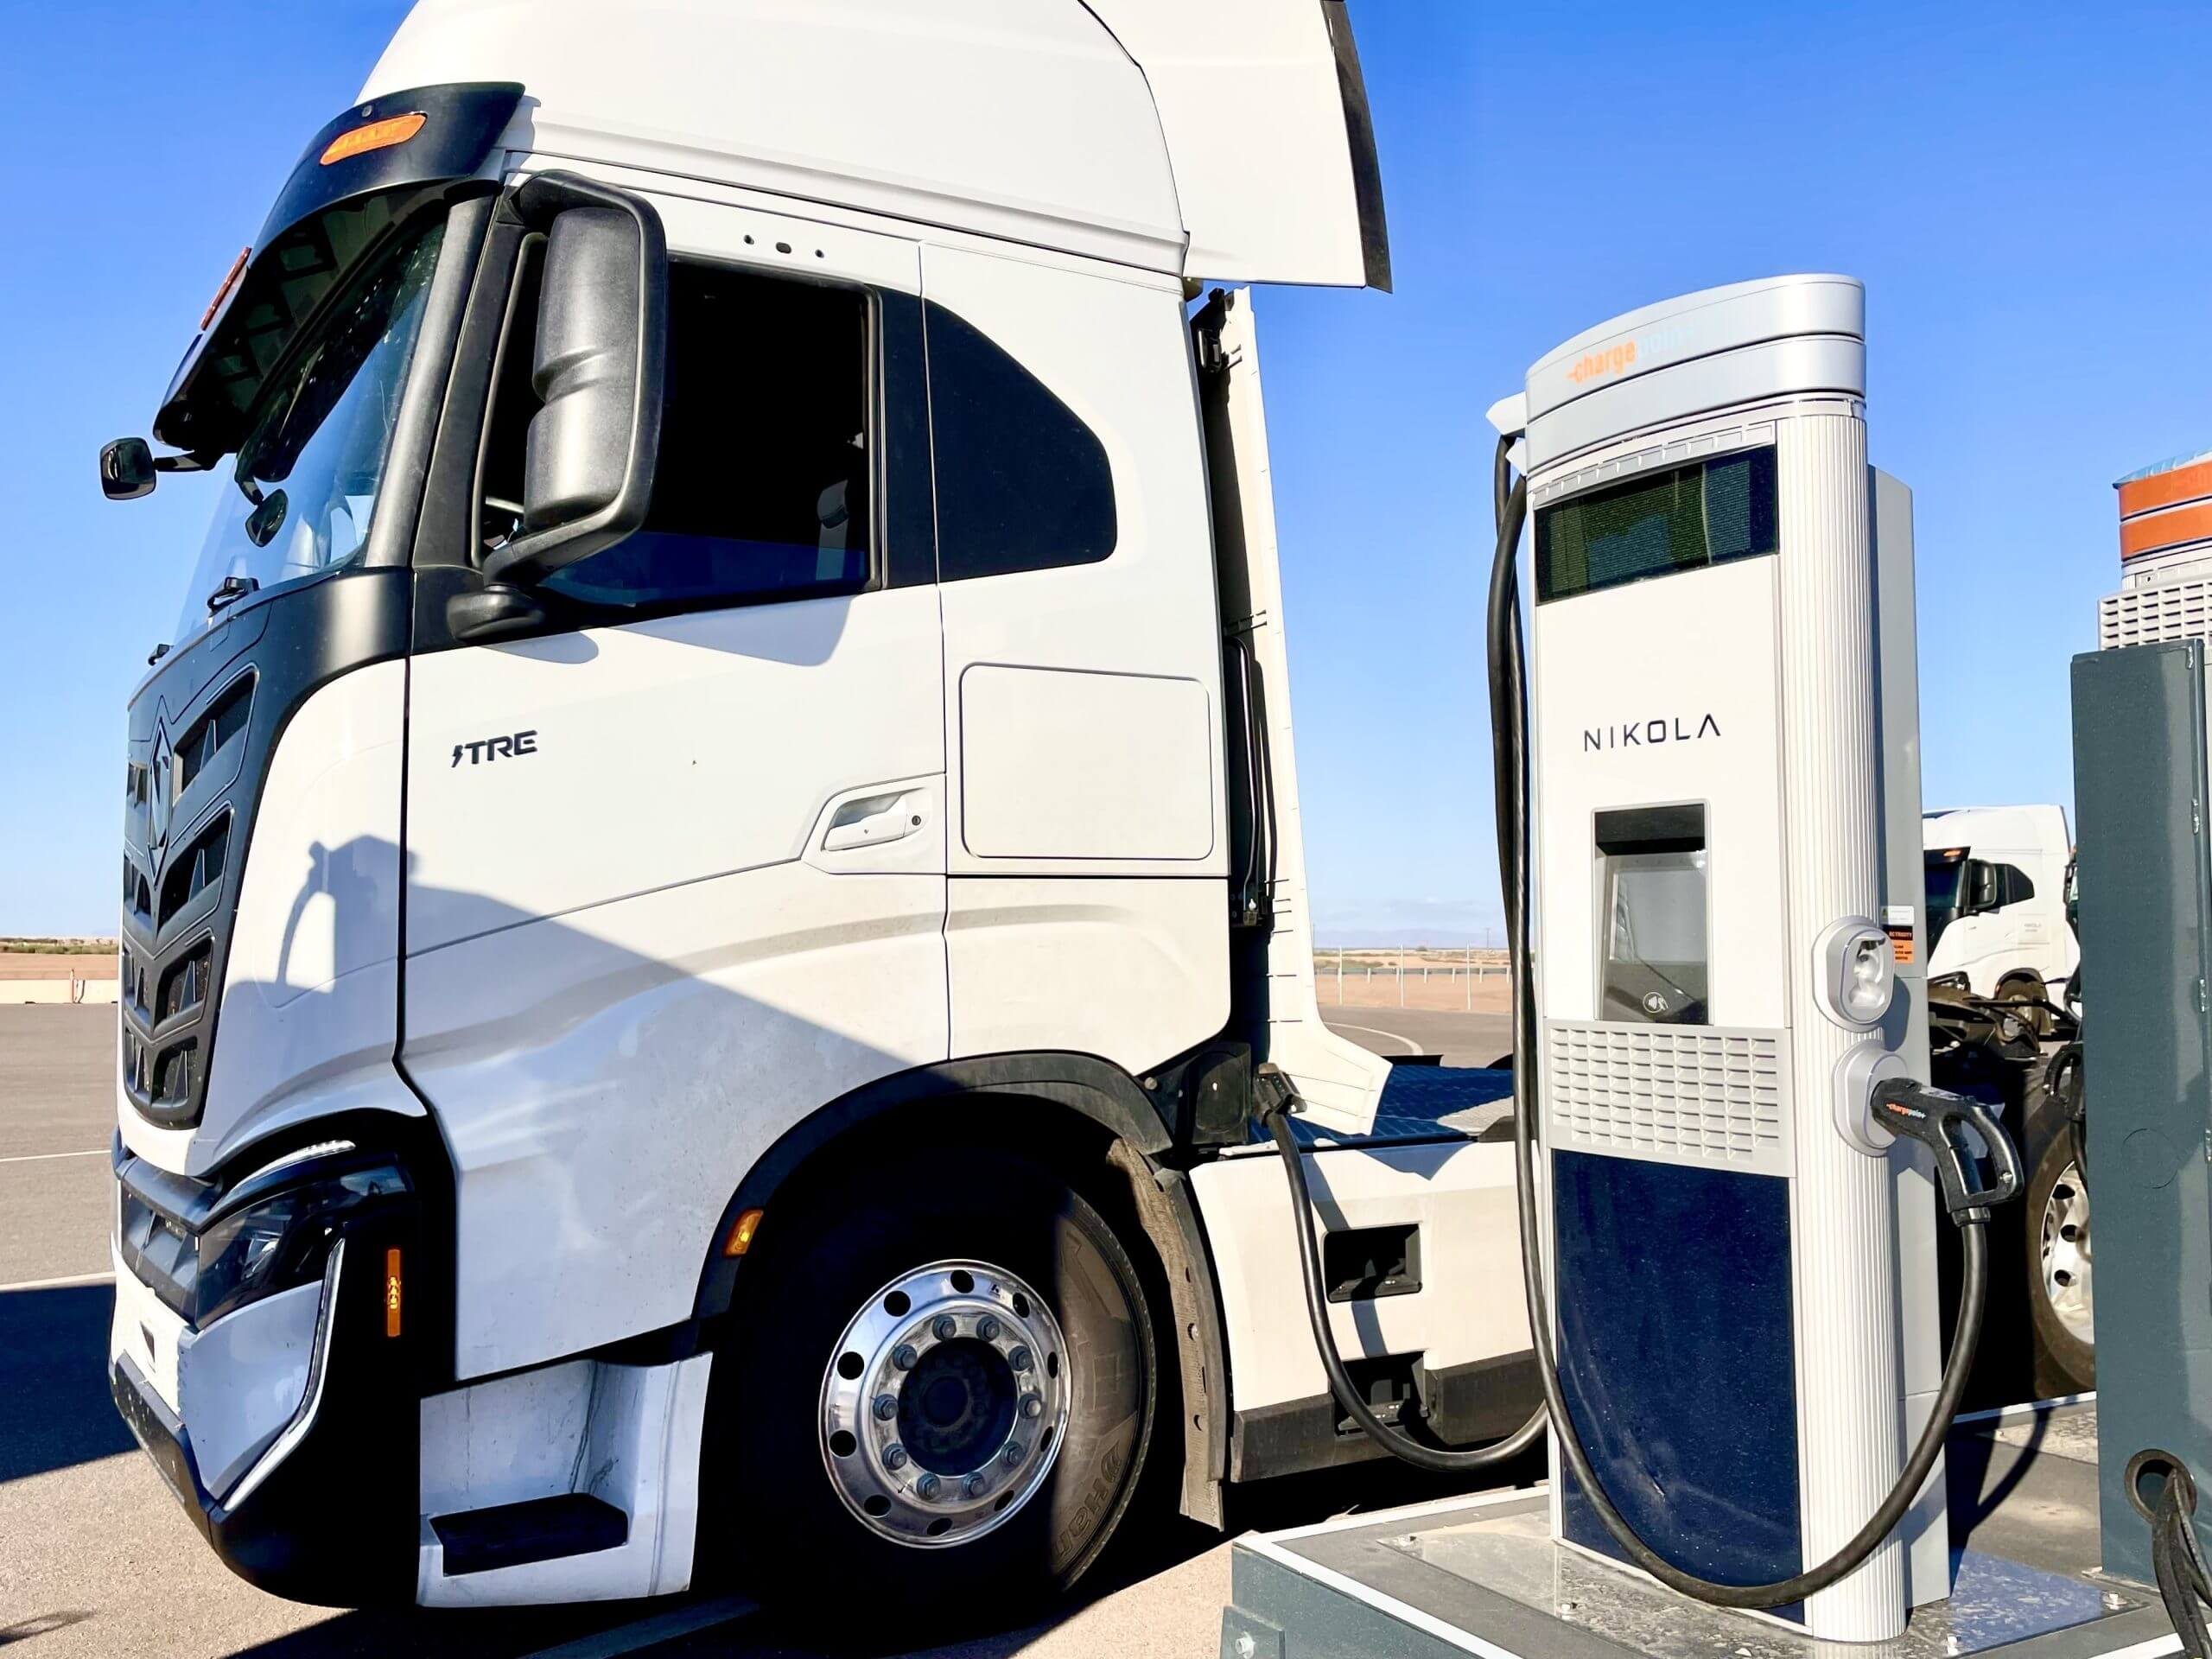 Nikola и ChargePoint расширяют инфраструктуру зарядки электромобилей в США в рамках стратегического партнерства